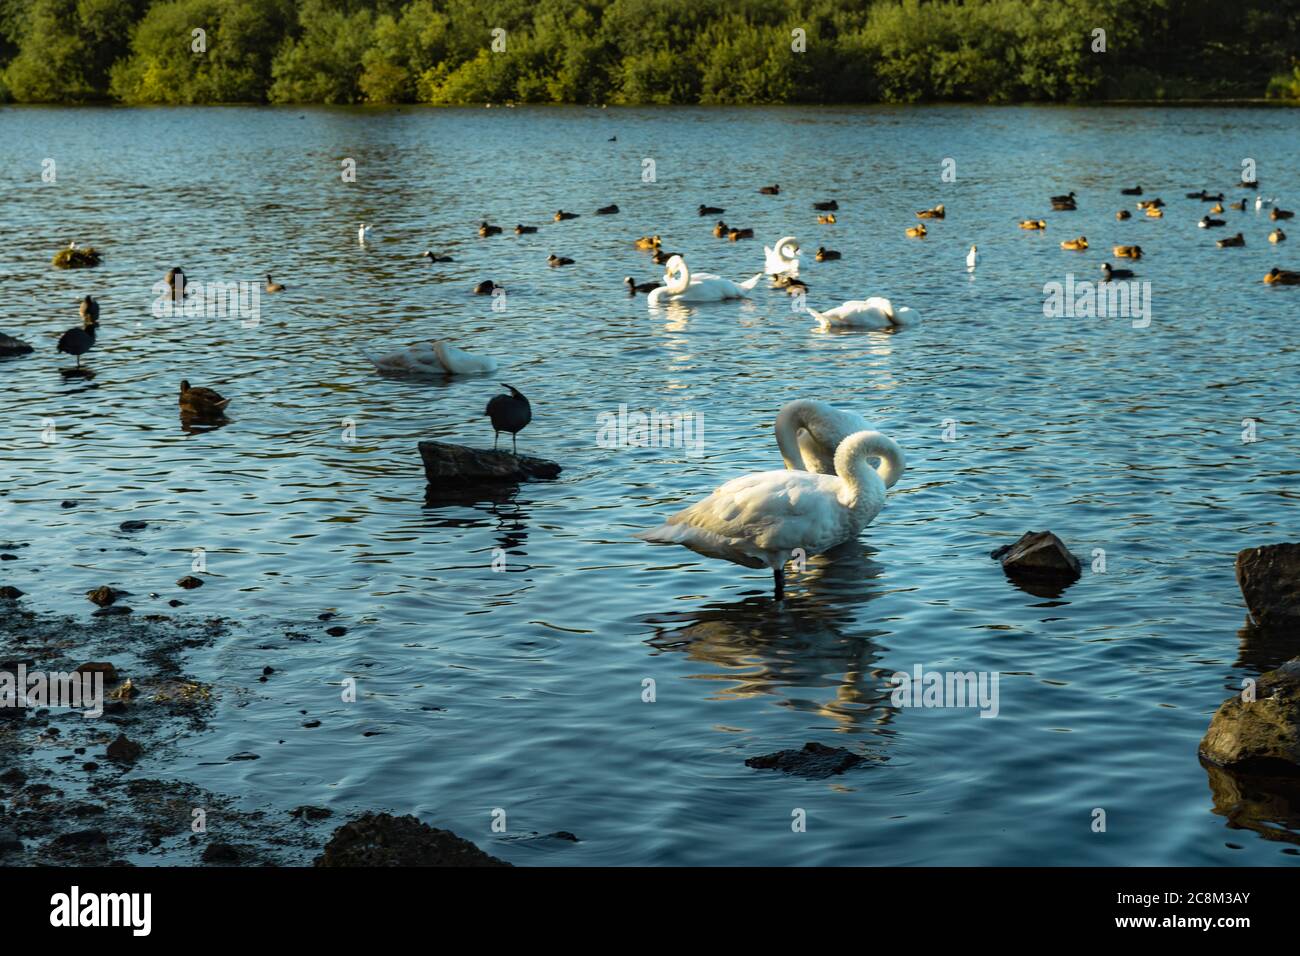 Fauna selvatica godendo della natura sul lago. Un riflesso stupefacente di due cigni mentre sono nel lago. Le increspature dell'acqua distorcono il riflesso di Foto Stock